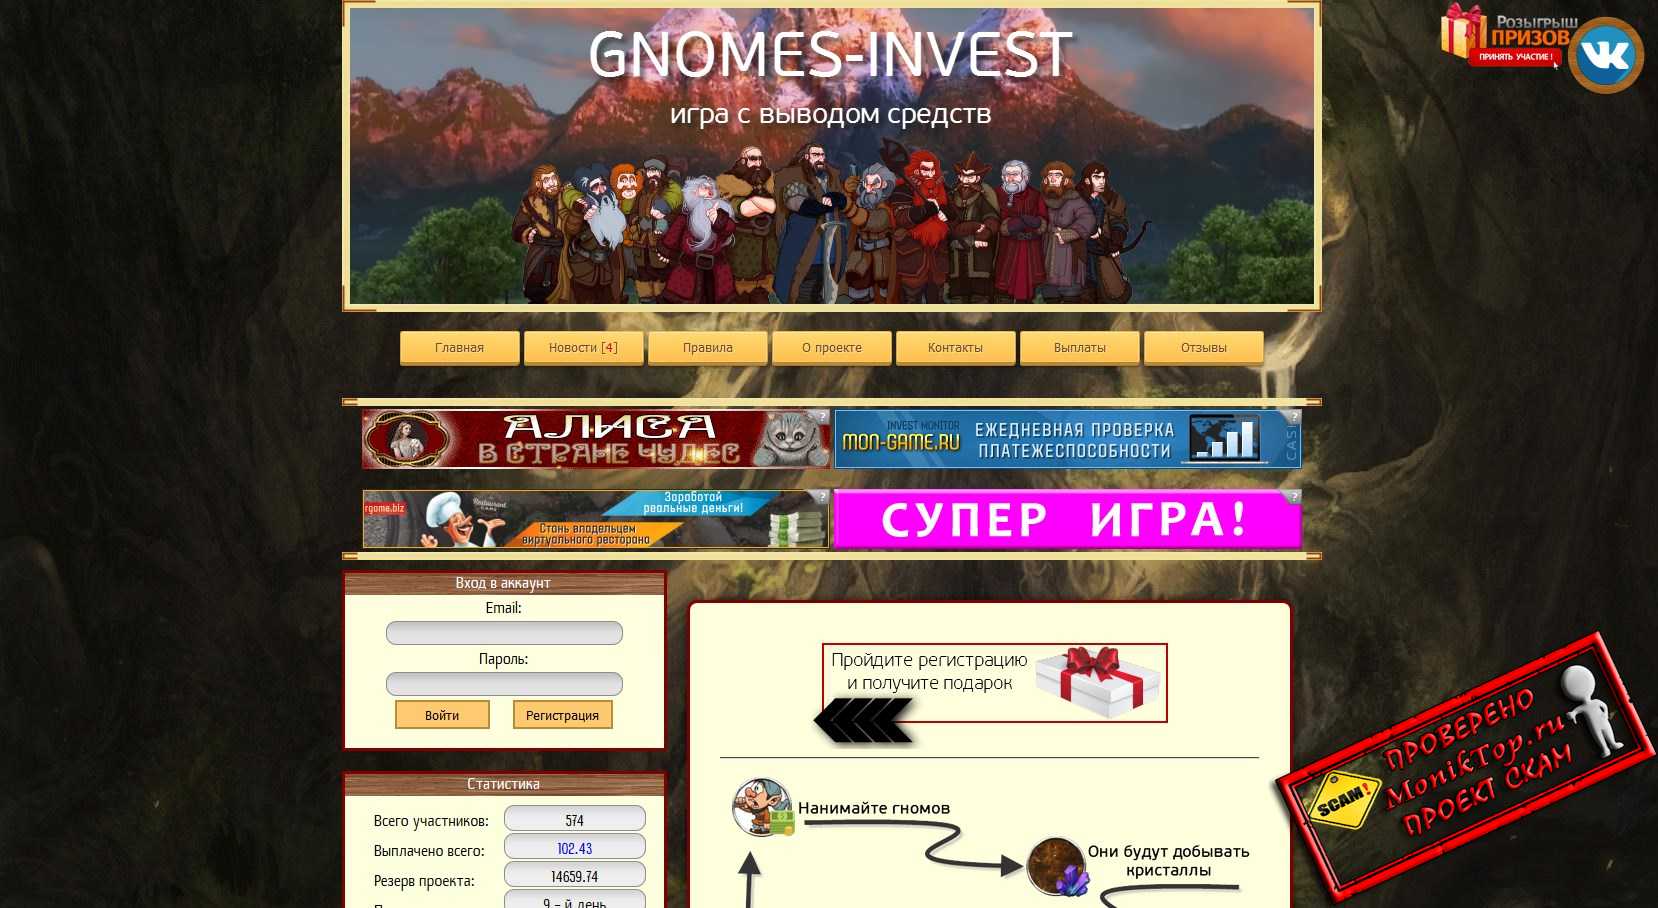 Gnomes Invest